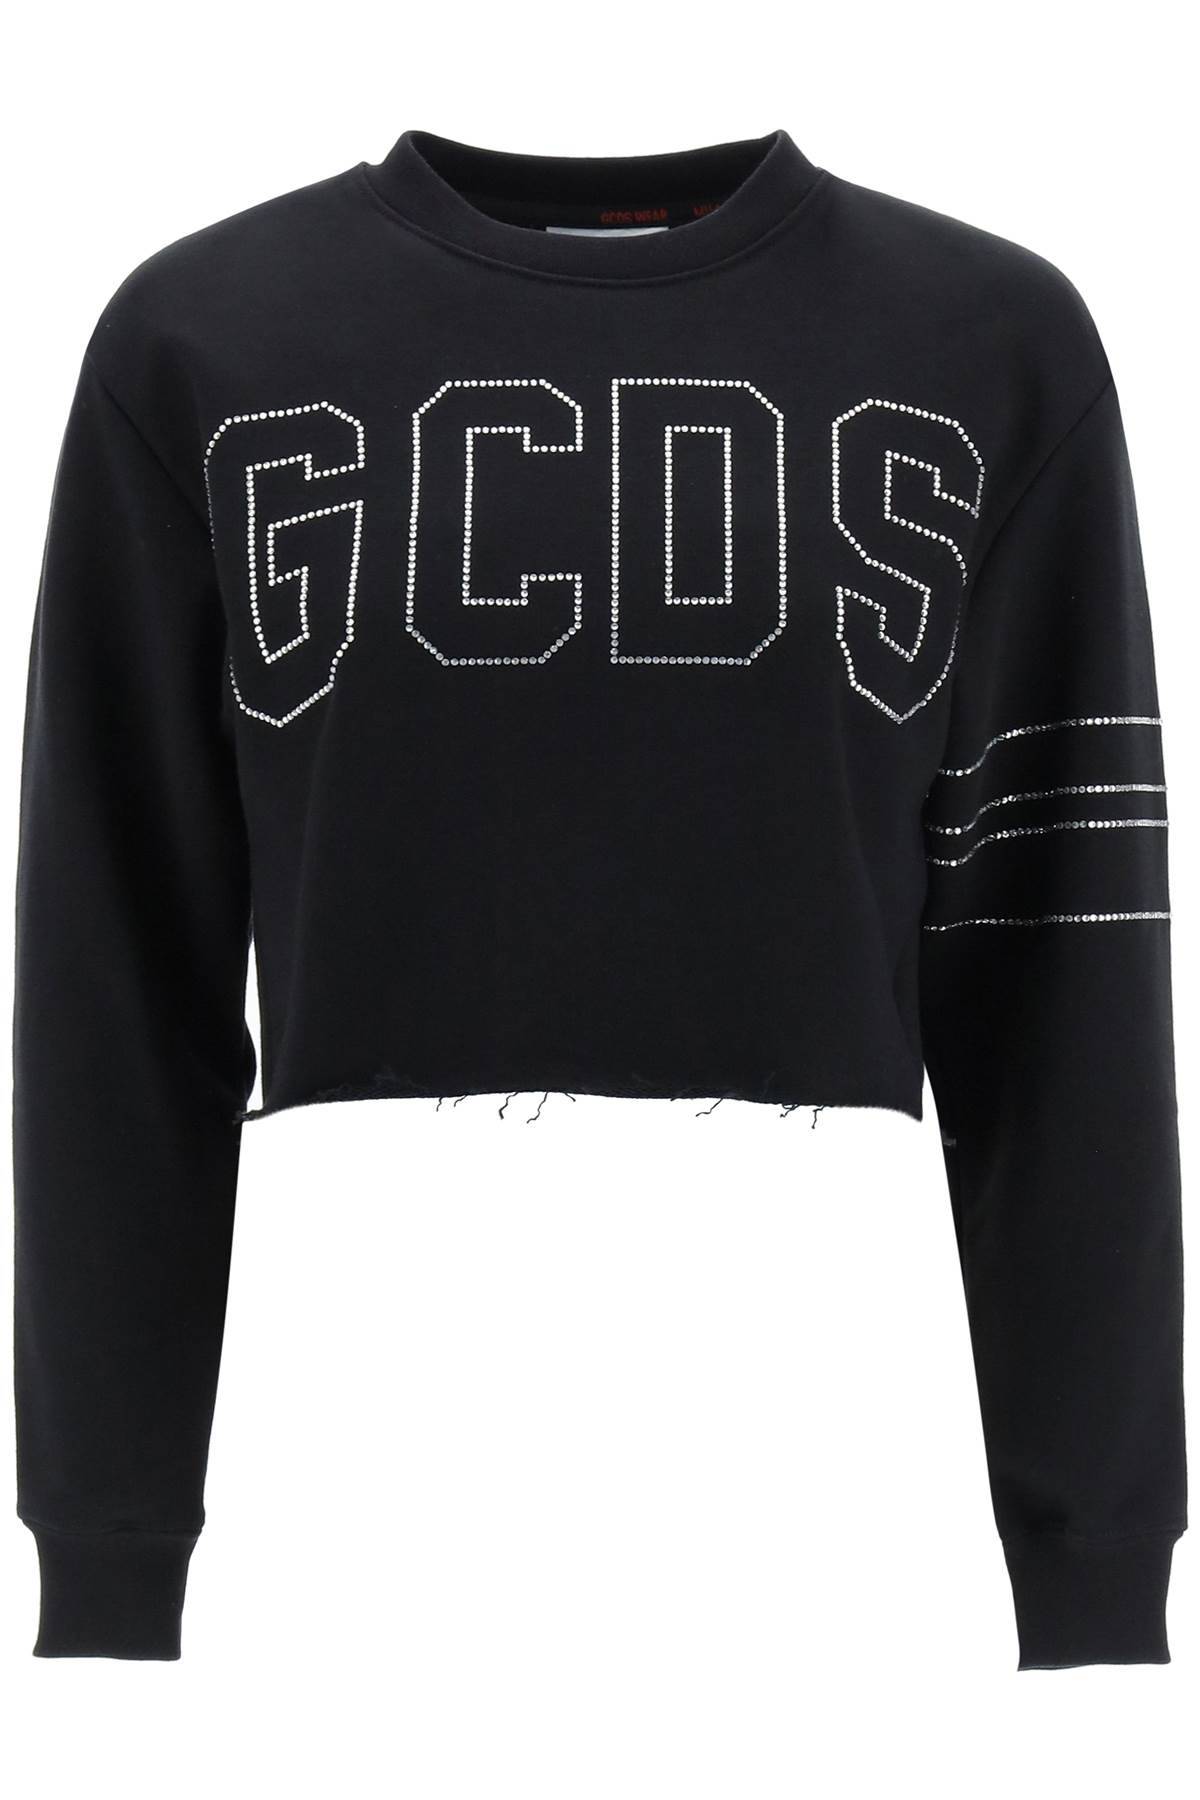 GCDS GCDS cropped sweatshirt with rhinestone logo